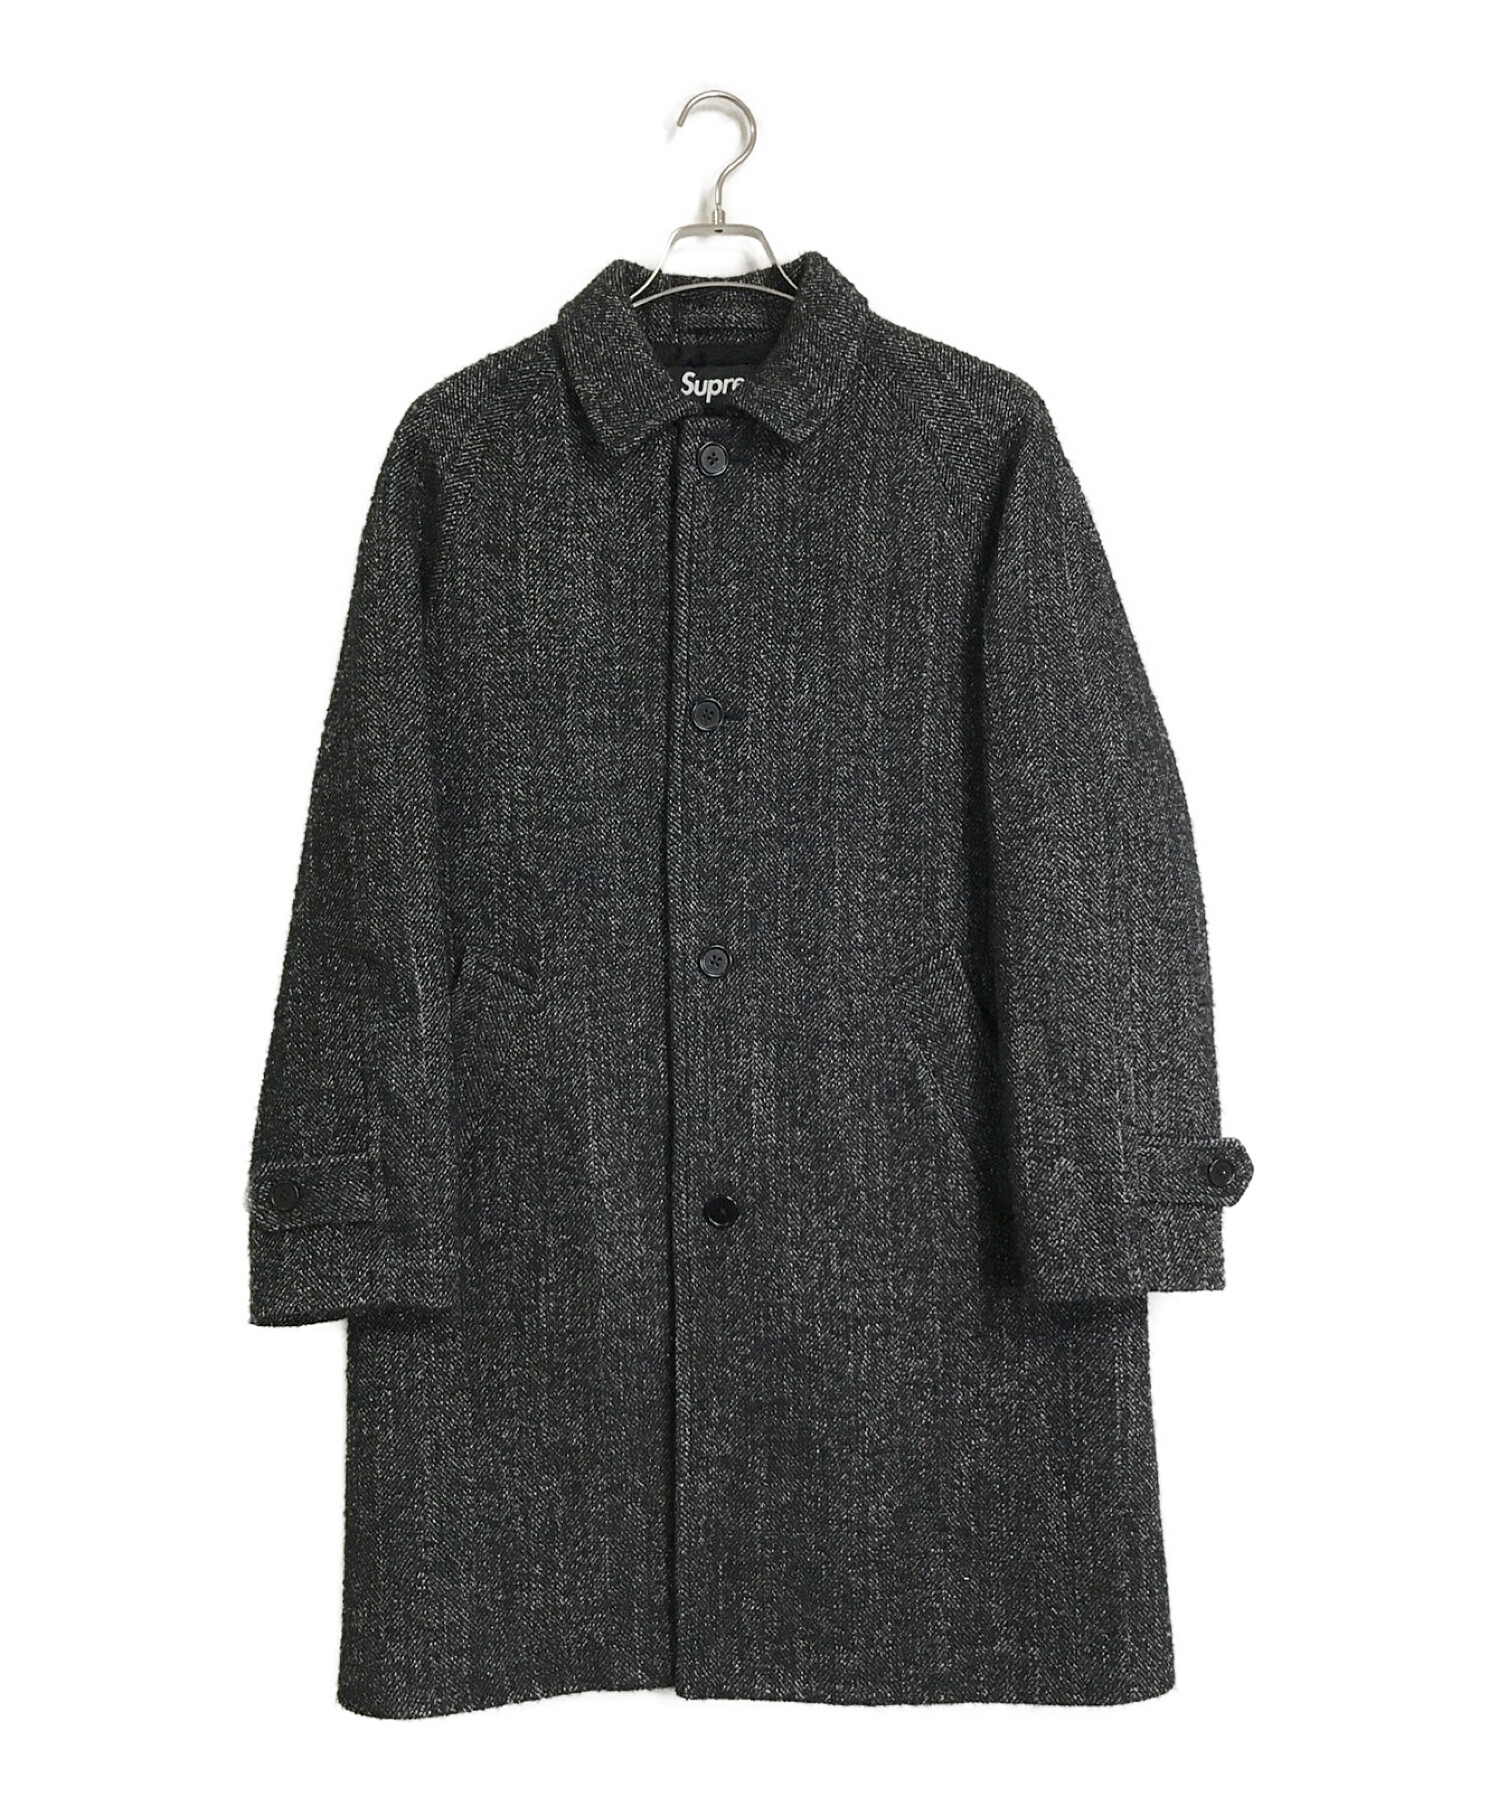 Supreme (シュプリーム) 18AW Loro Piana Wool Trench Coat ブラック サイズ:S